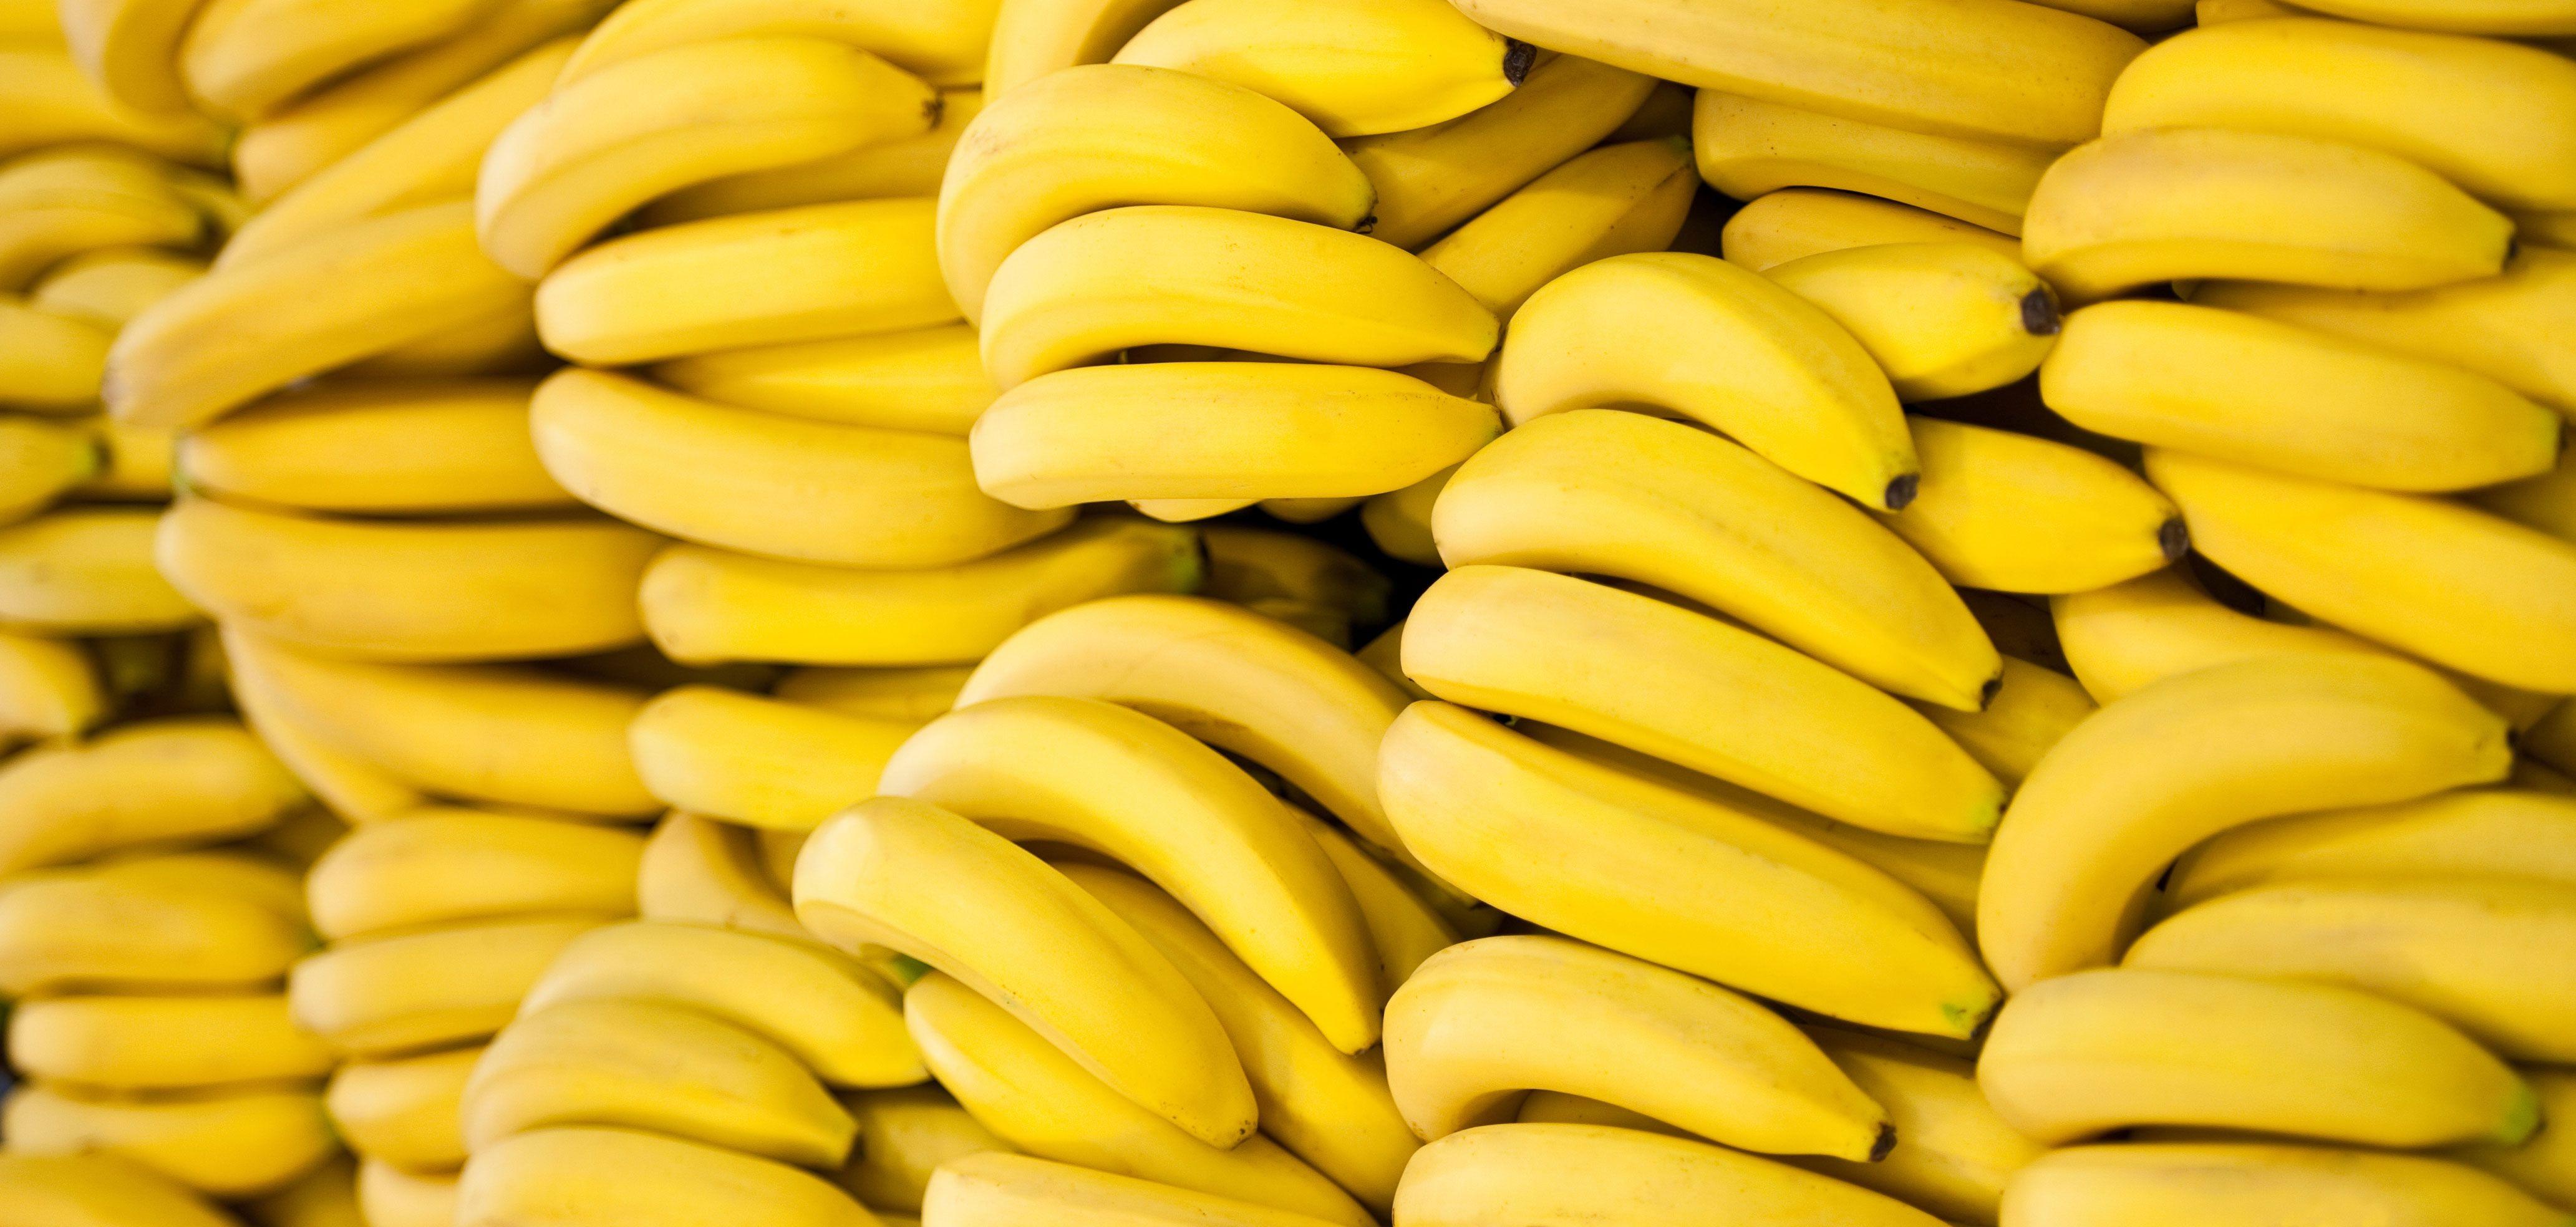 4130x1968px Bananas (931.79 KB).09.2015